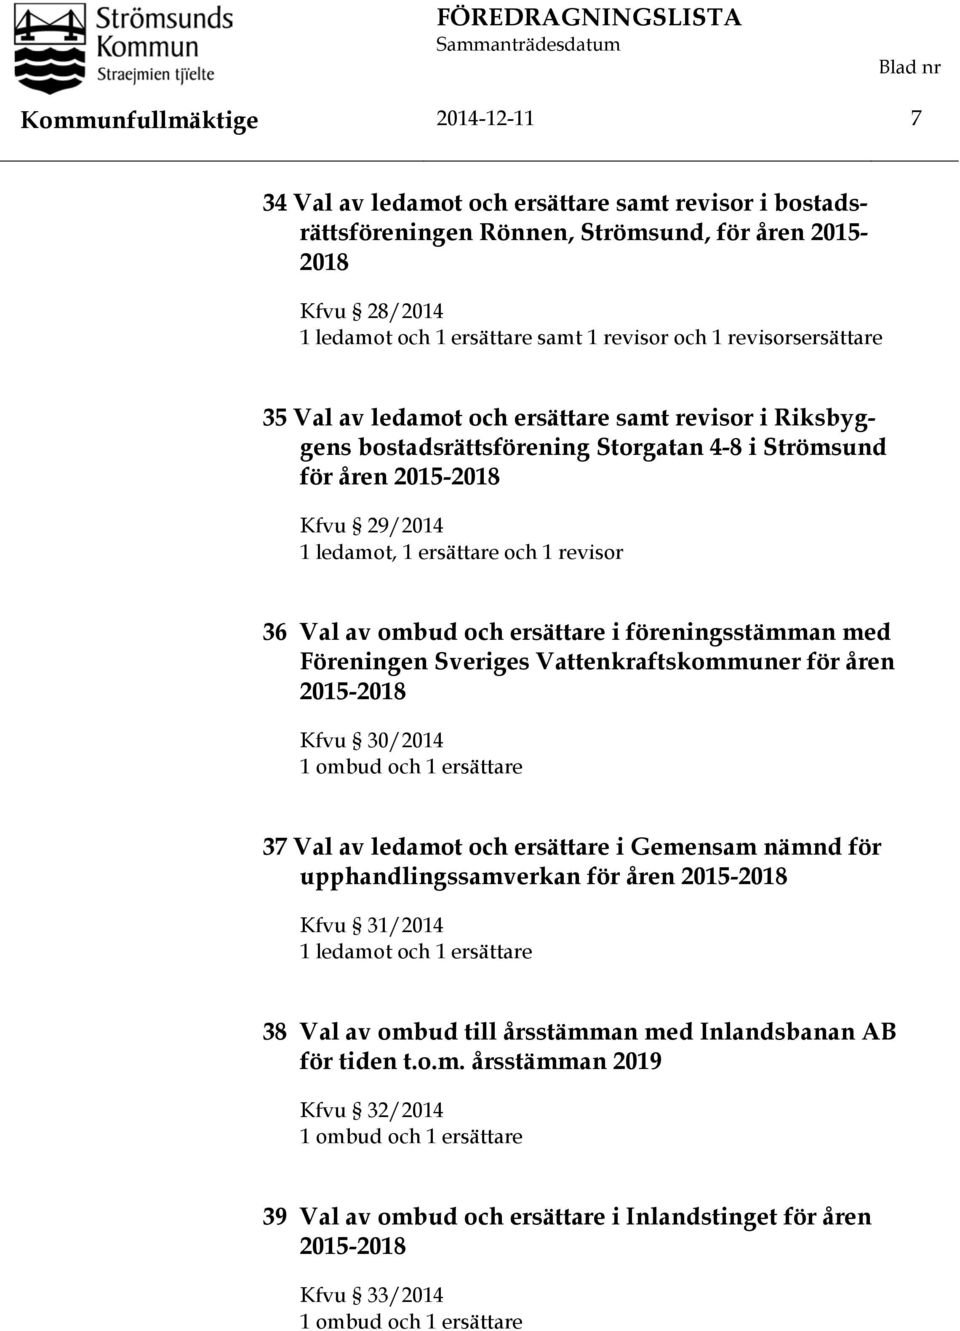 29/2014 1 ledamot, 1 ersättare och 1 revisor 36 Val av ombud och ersättare i föreningsstämman med Föreningen Sveriges Vattenkraftskommuner för åren 2015-2018 Kfvu 30/2014 1 ombud och 1 ersättare 37